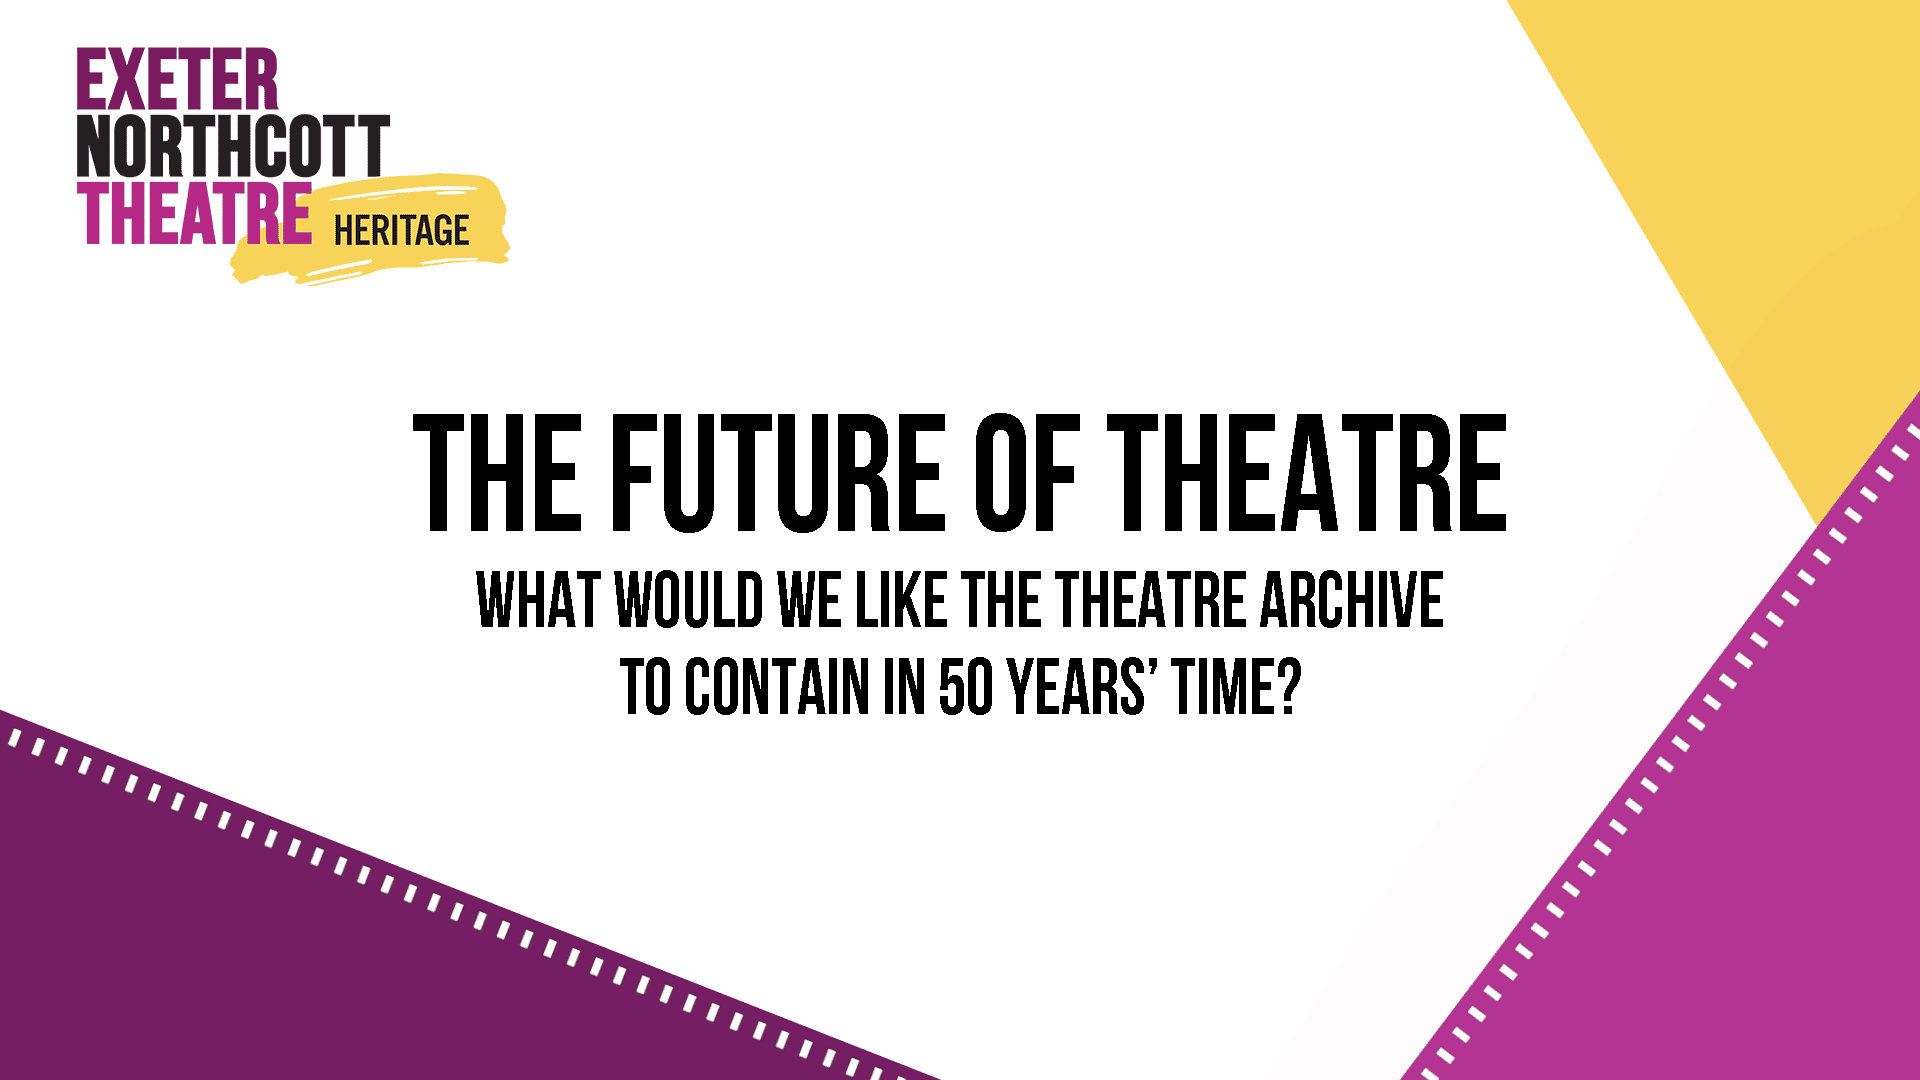 Heritage Talk: The Future of Theatre